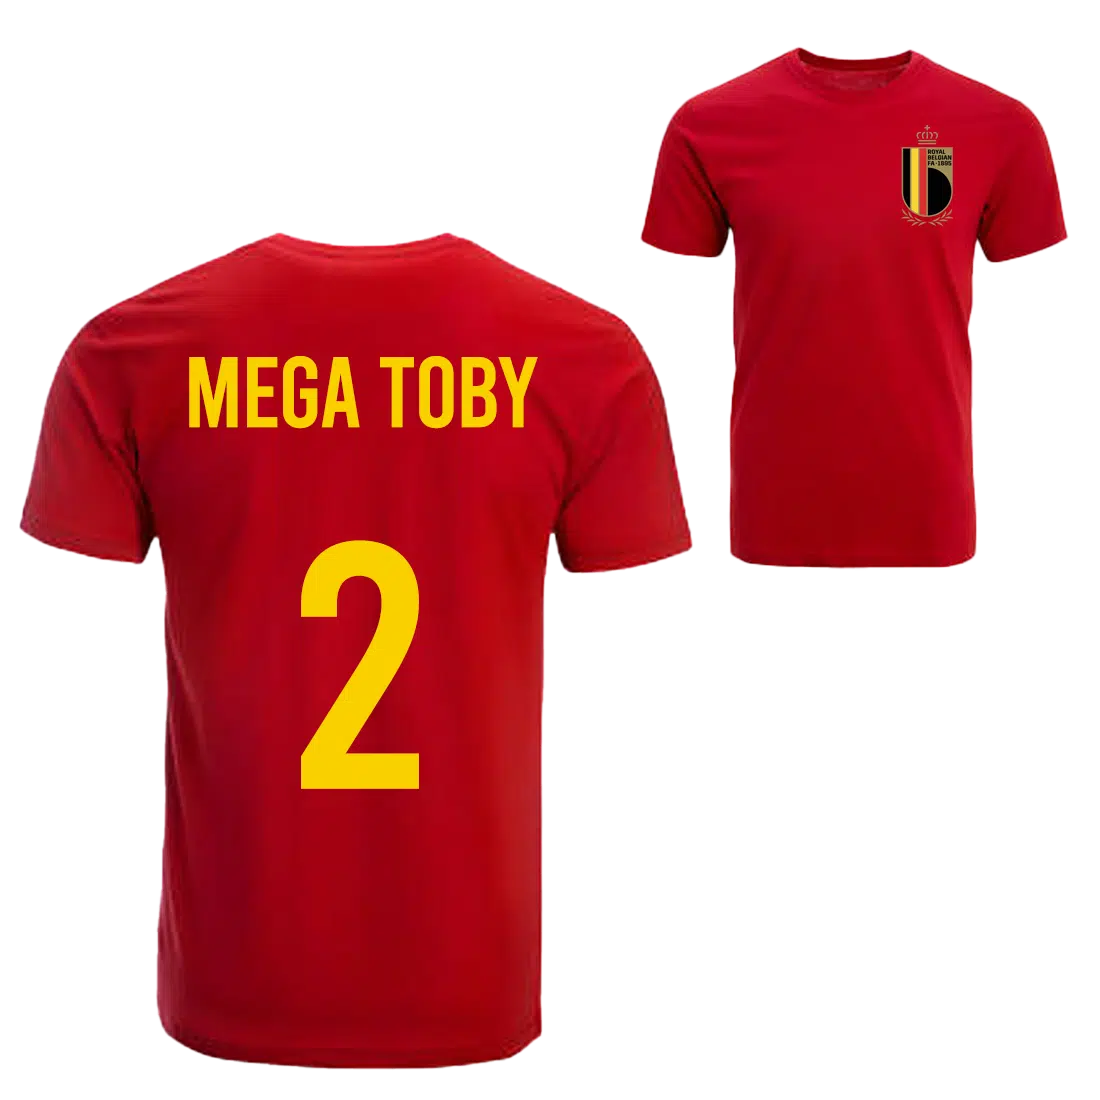 Mega Toby Belgie voetbalshirt sfeer